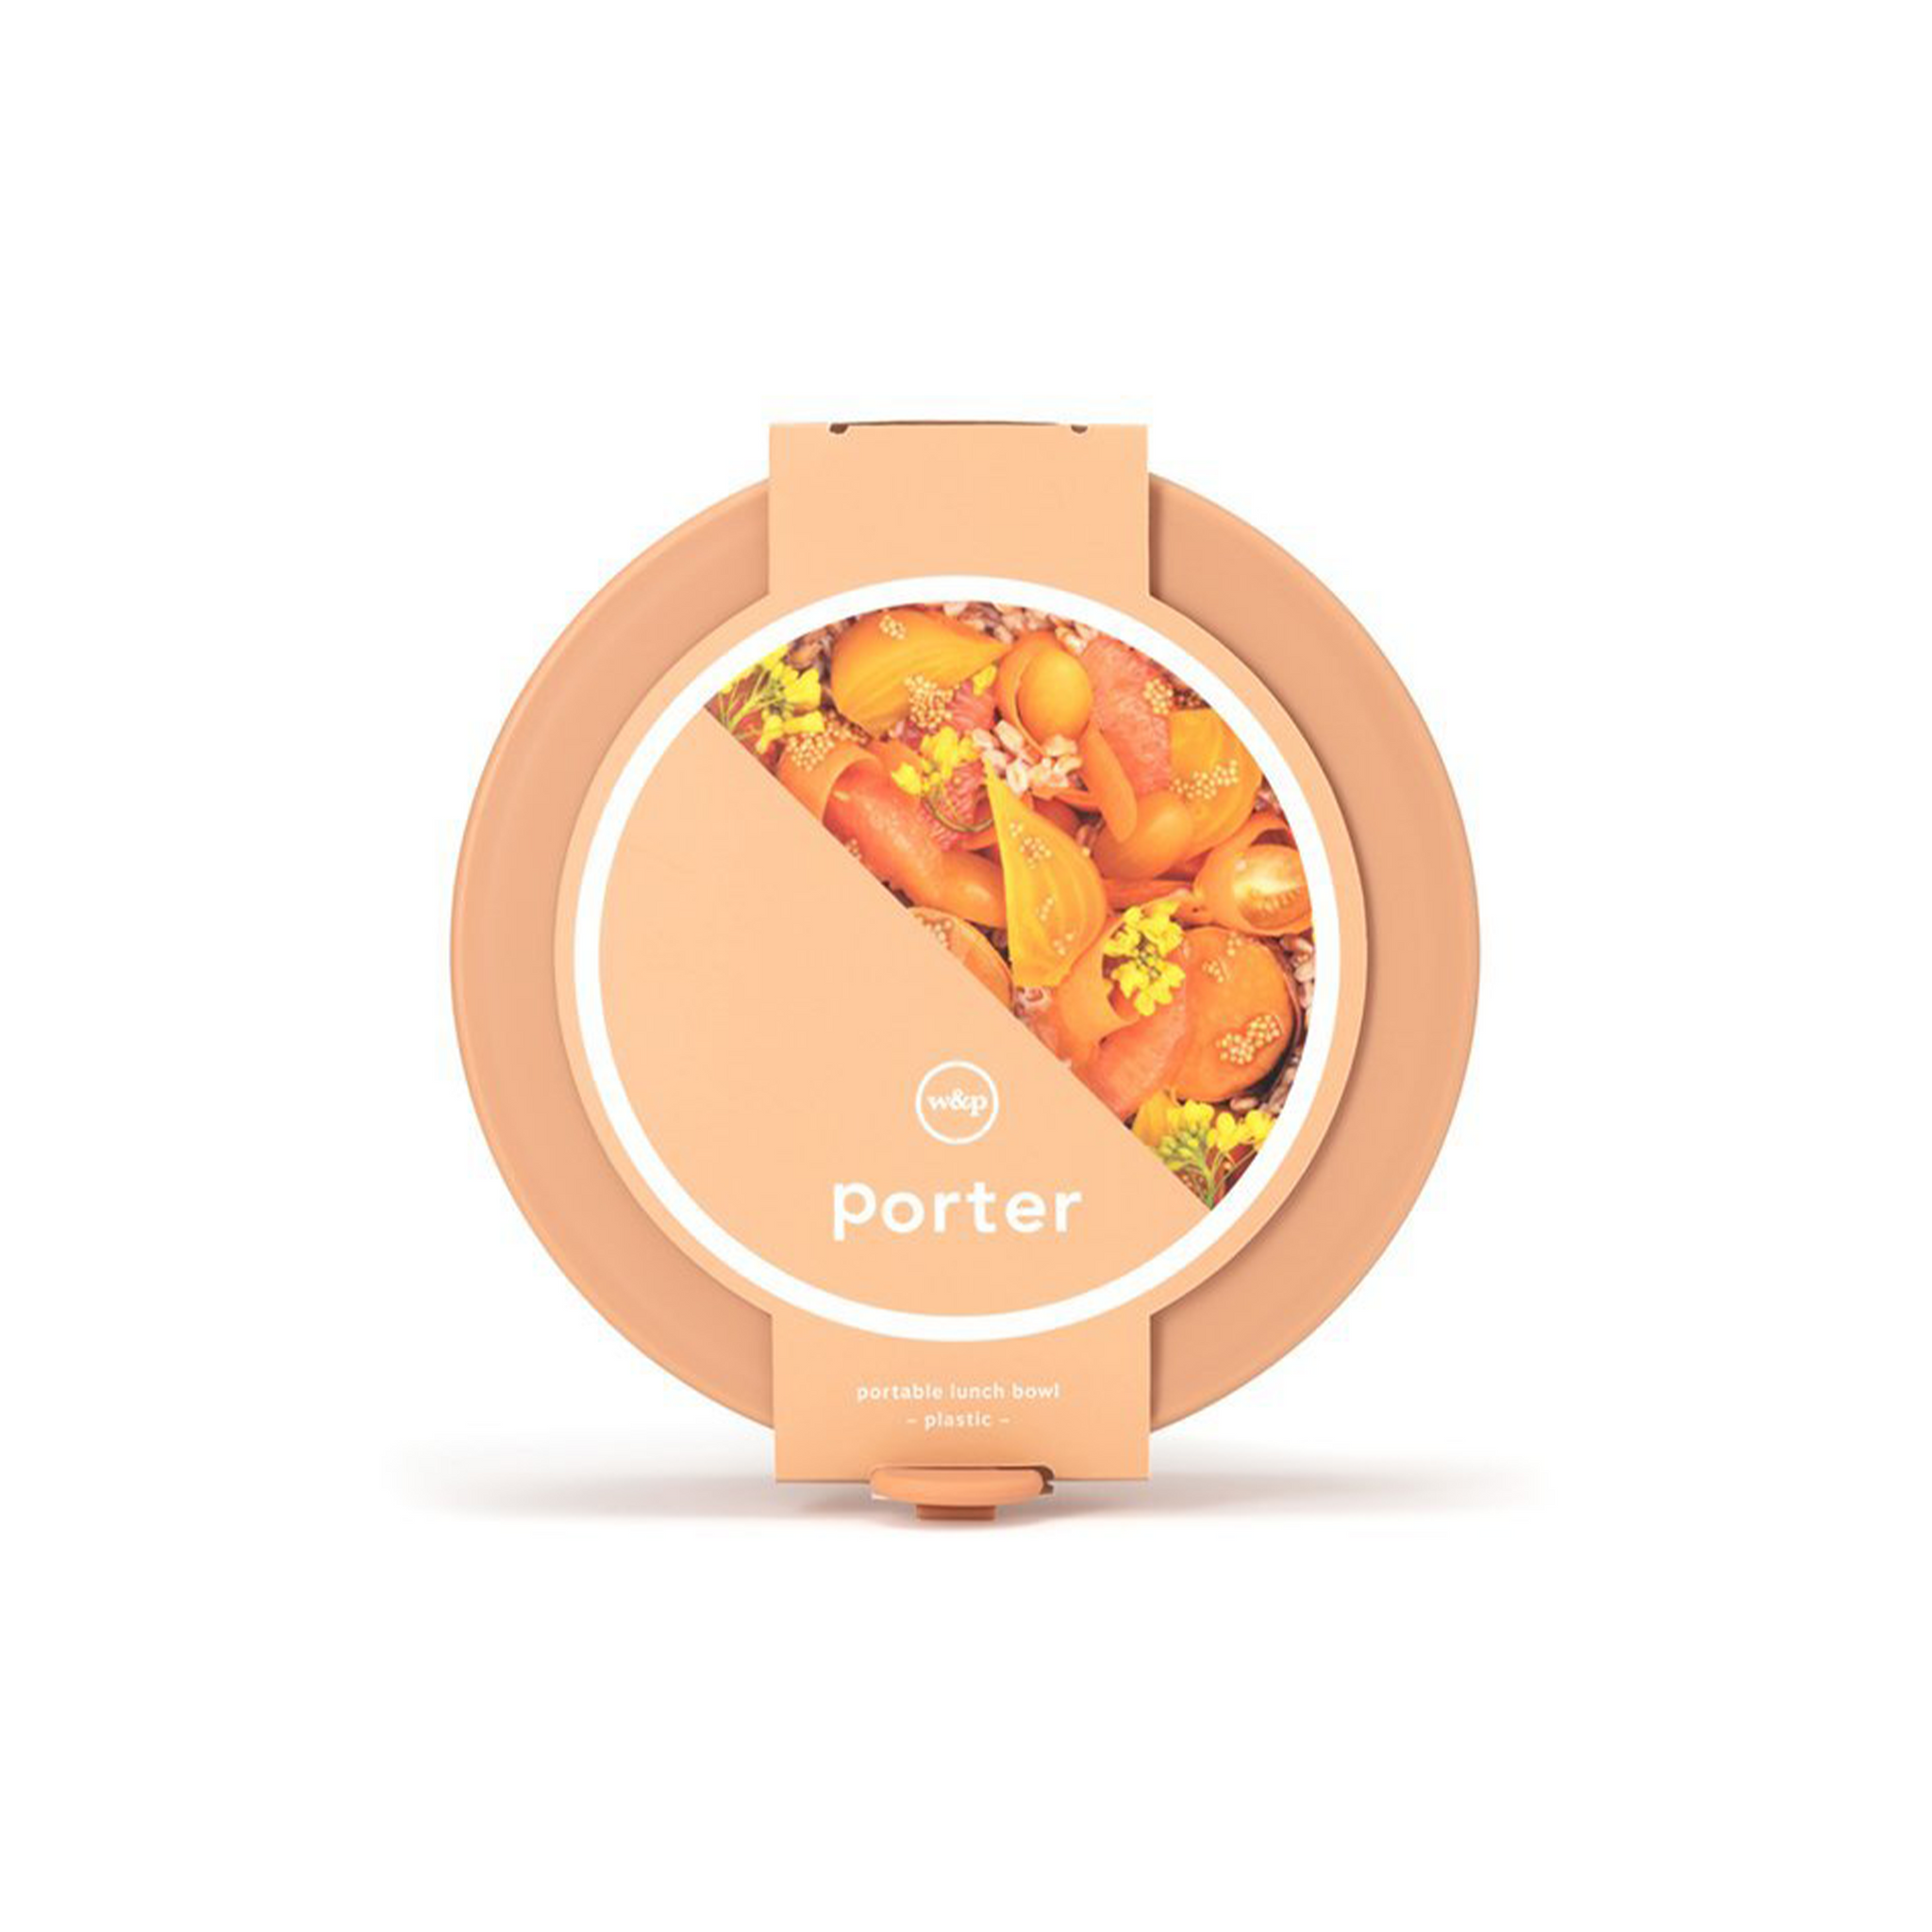 Porter Bowl – Atelier